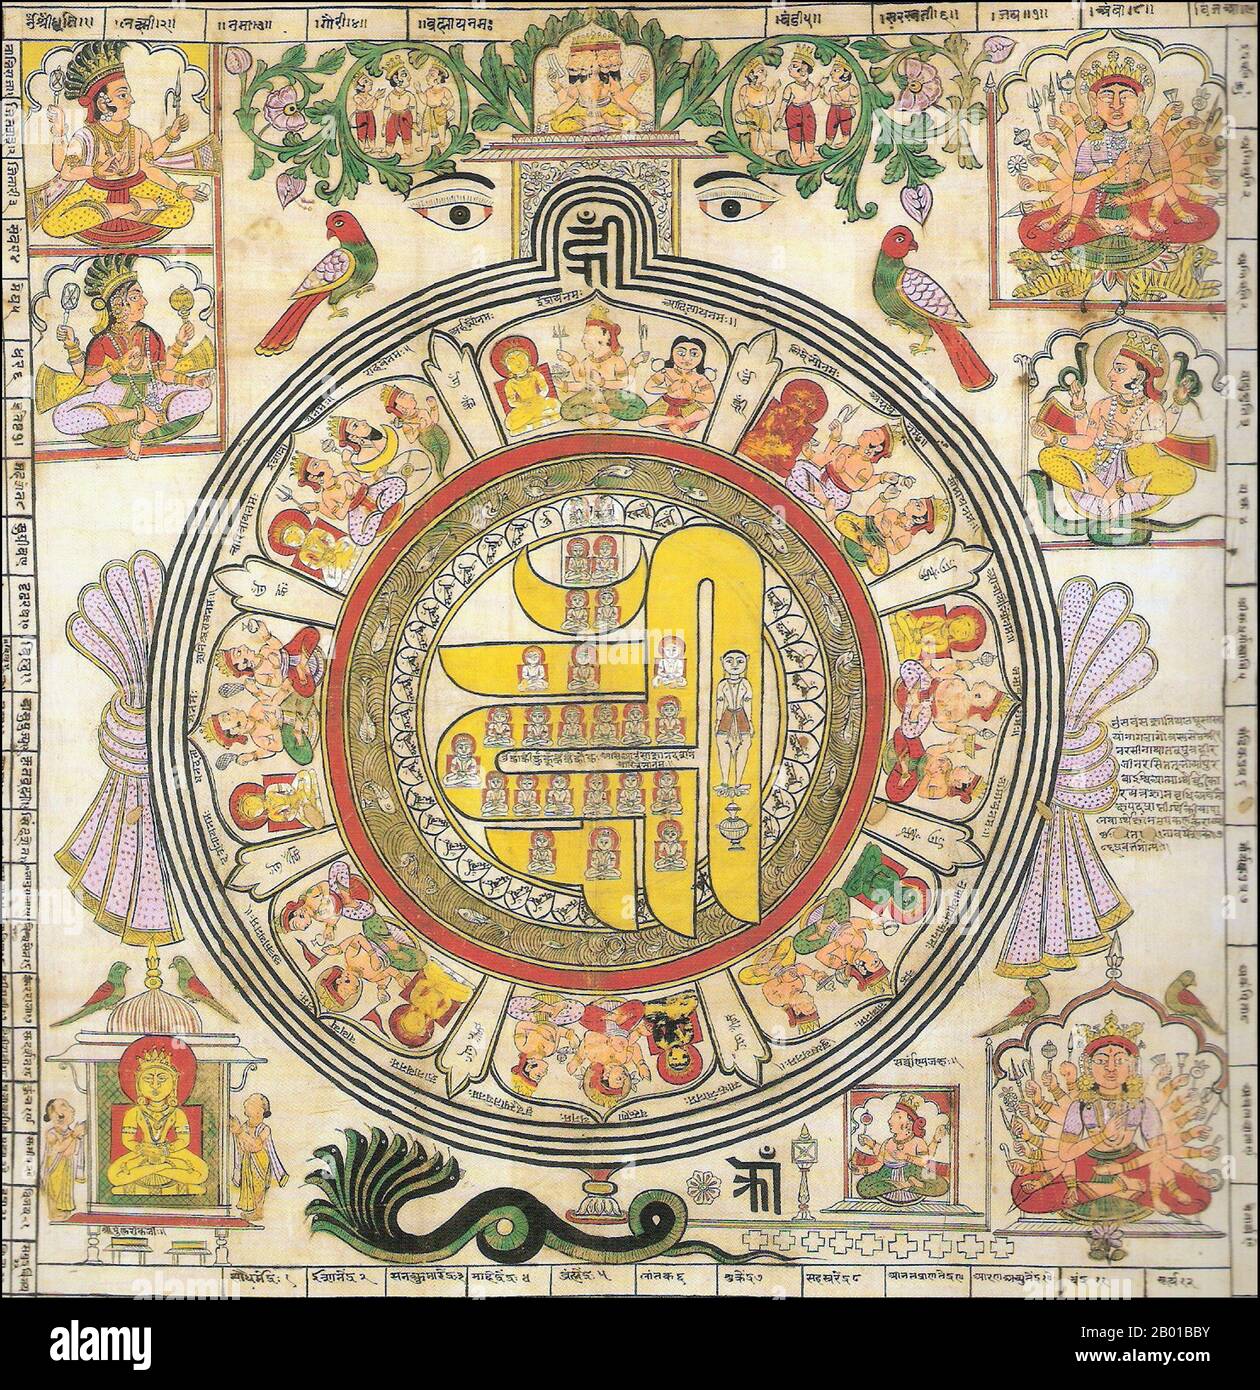 India: Diagramma dipinto del Om Hrim Siddhi Chakra utilizzato da Jains in dravya puja, 18th ° secolo. Il Jainism è una religione indiana che prescrive il pacifism ed un percorso di non-violenza verso tutti gli esseri viventi. La sua filosofia e la sua pratica sottolineano la necessità di uno sforzo di sé per muovere l'anima verso la coscienza e la liberazione divine. Ogni anima che ha conquistato i propri nemici interni e raggiunto lo stato di essere supremo è chiamata Jina (Conquistatore o vincitore). Il giainismo è anche chiamato Shraman (autonomo) Dharma o la religione di Nirgantha (che non ha attaccamenti e scongiuramenti). Foto Stock